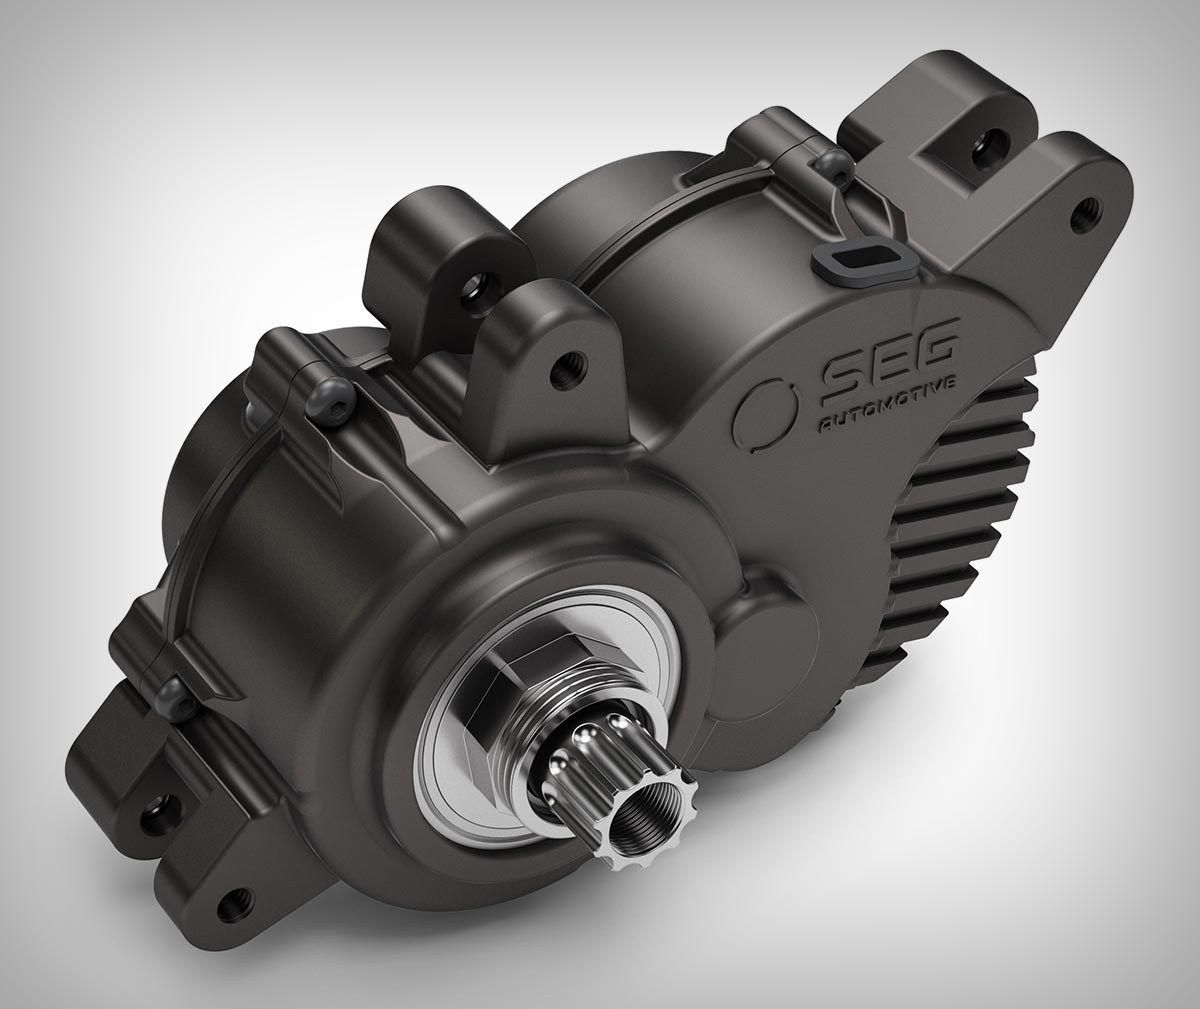 SEG Automotive se convierte en proveedor de motores eléctricos para BH Bikes